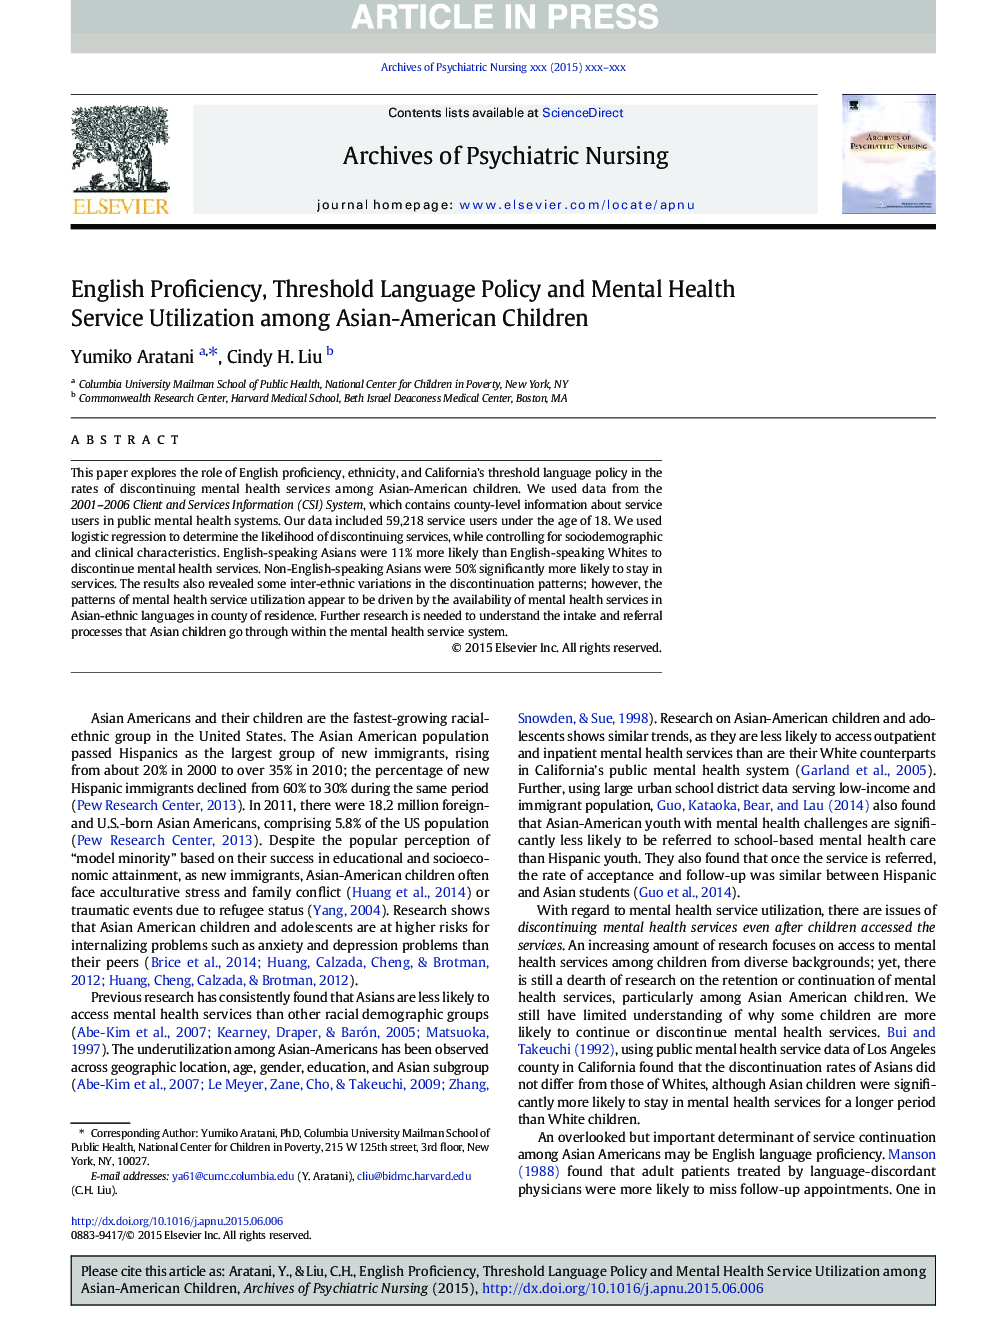 مهارت انگلیسی، سیاست زبان آستانه و استفاده از خدمات بهداشت روان در میان کودکان آسیایی-آمریکایی 